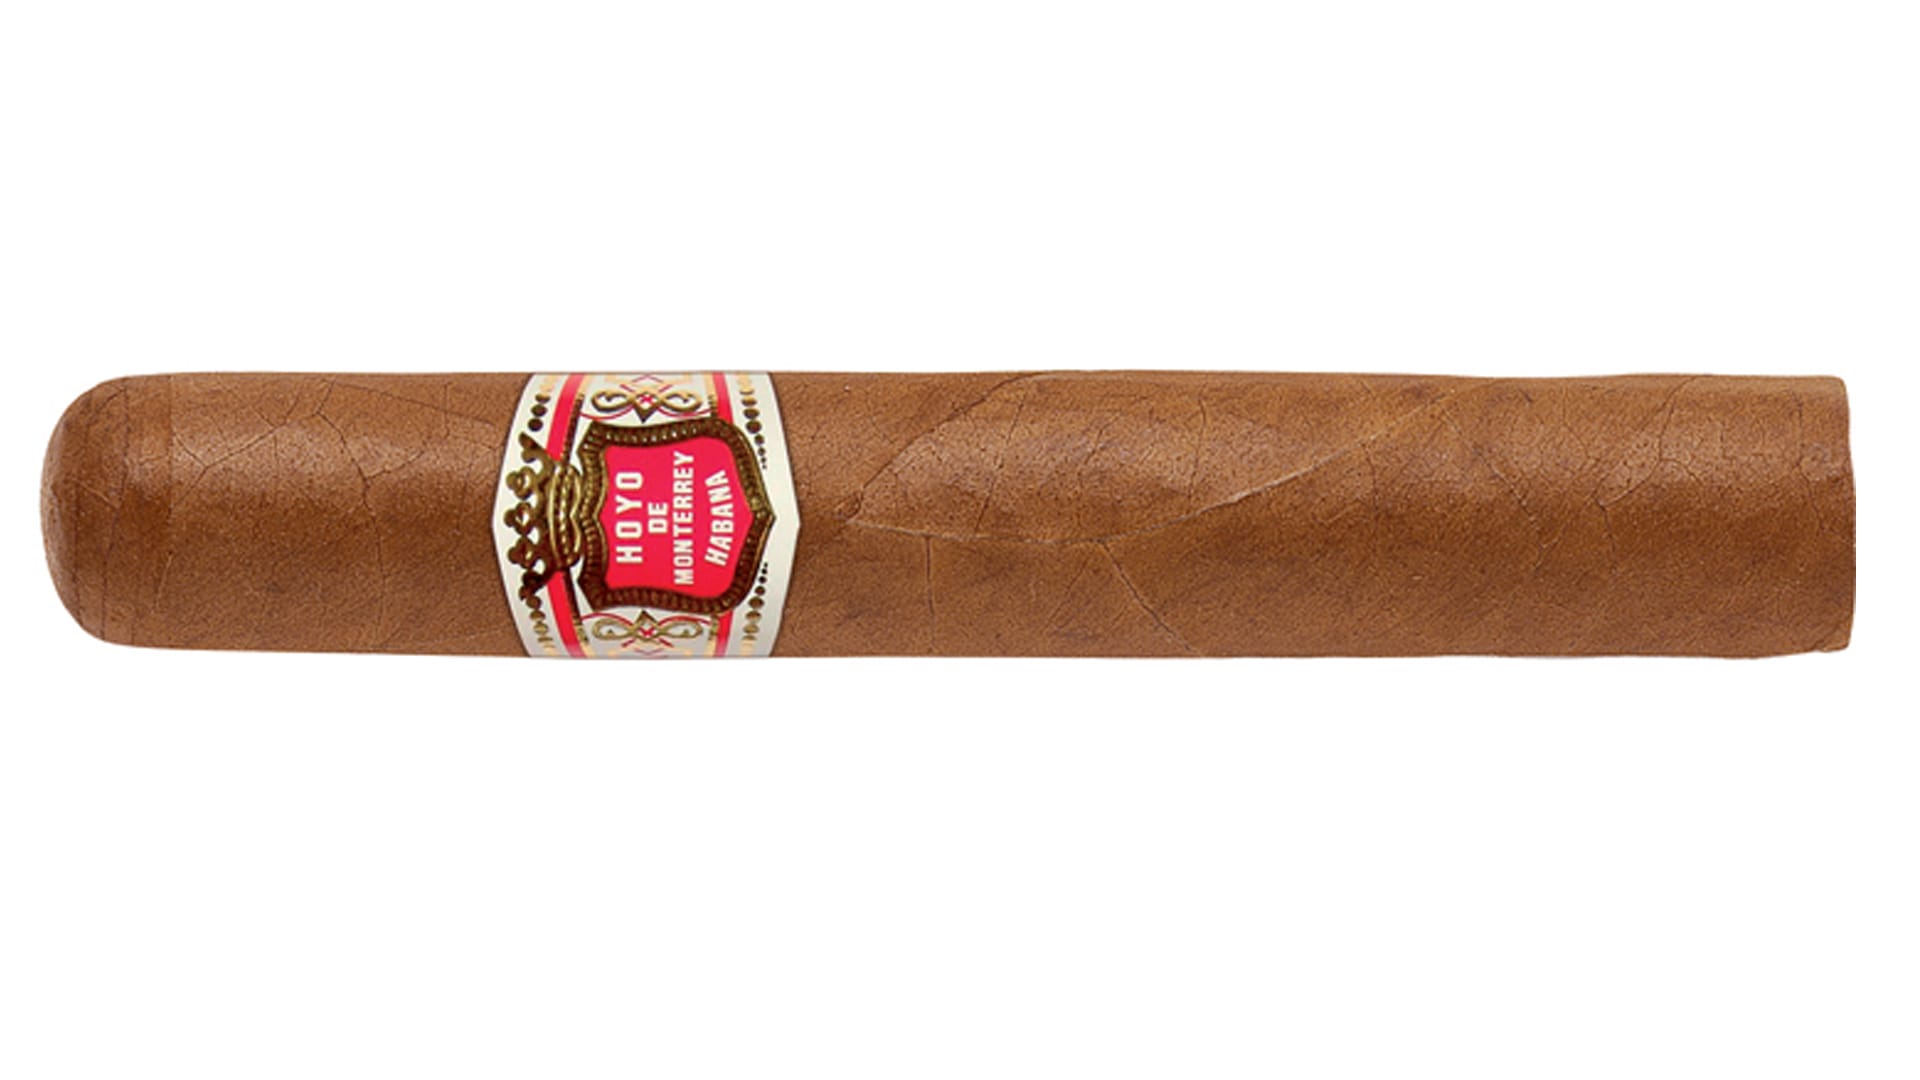 Marc Bendens erster Tipp für Zigarren-Einsteiger: Die Hoyo de Monterrey Epicure Nr. 2 aus Kuba für 10,20 Euro bietet unkomplizierten Genuss auf hohem Niveau.